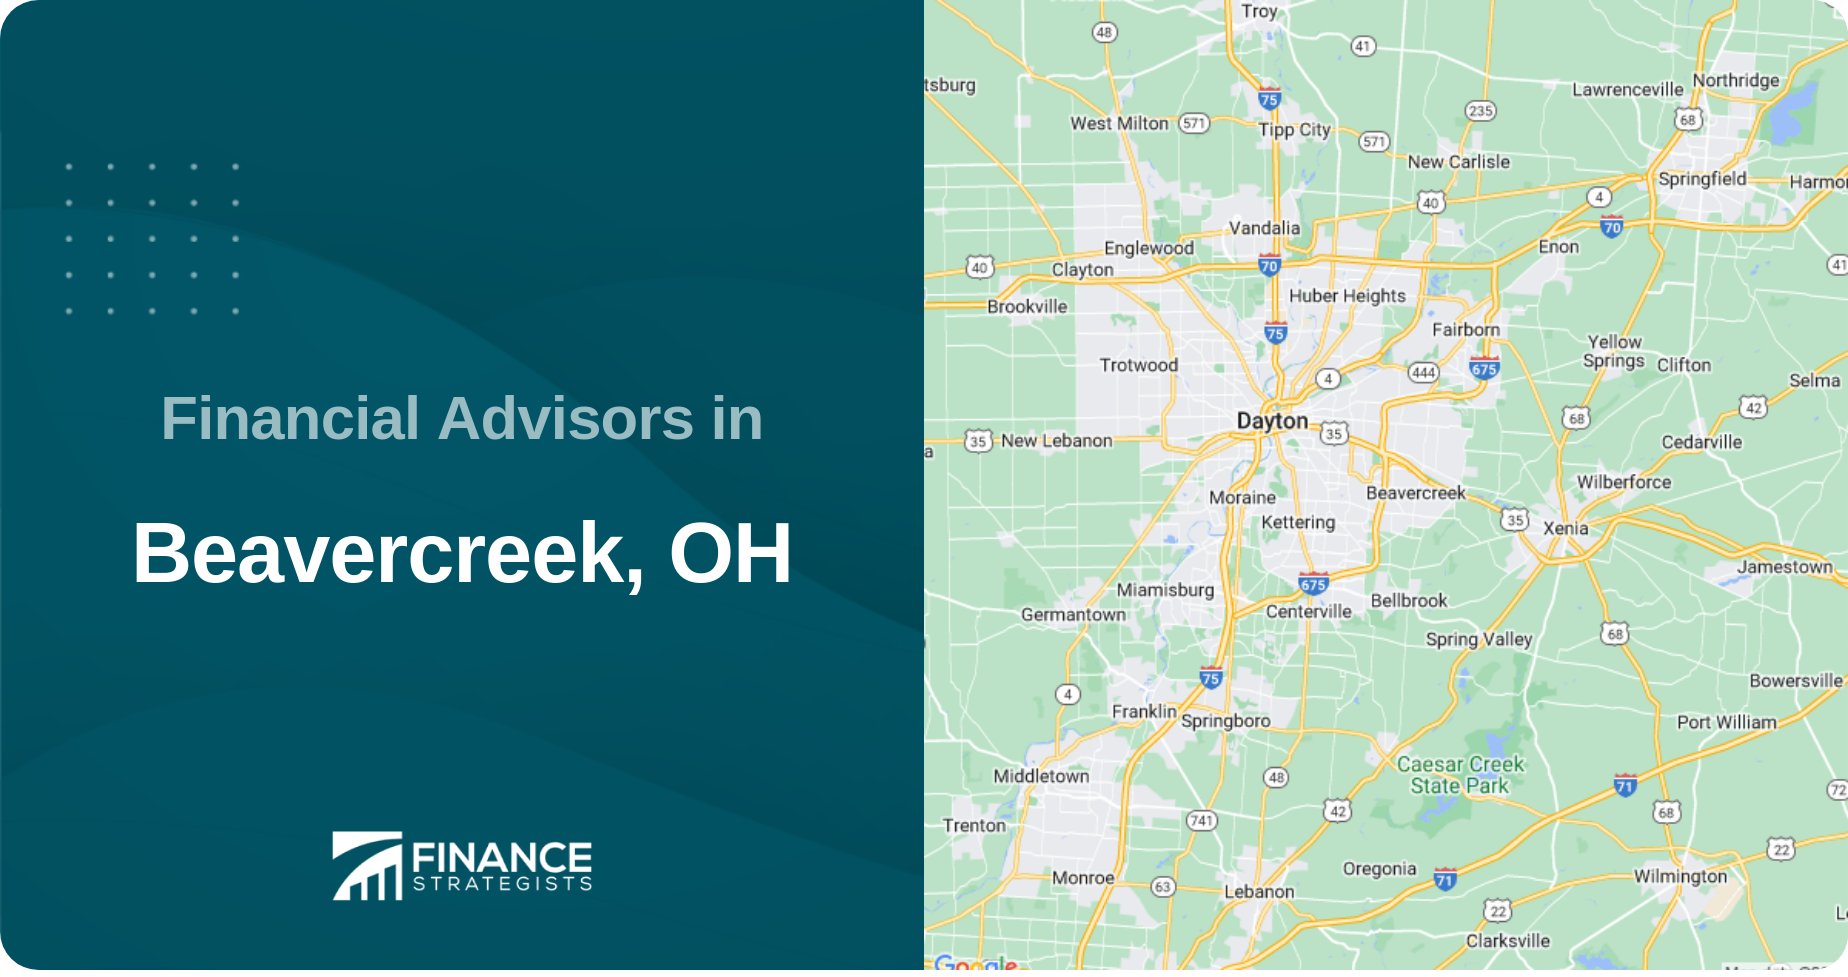 Financial Advisors in Beavercreek, OH